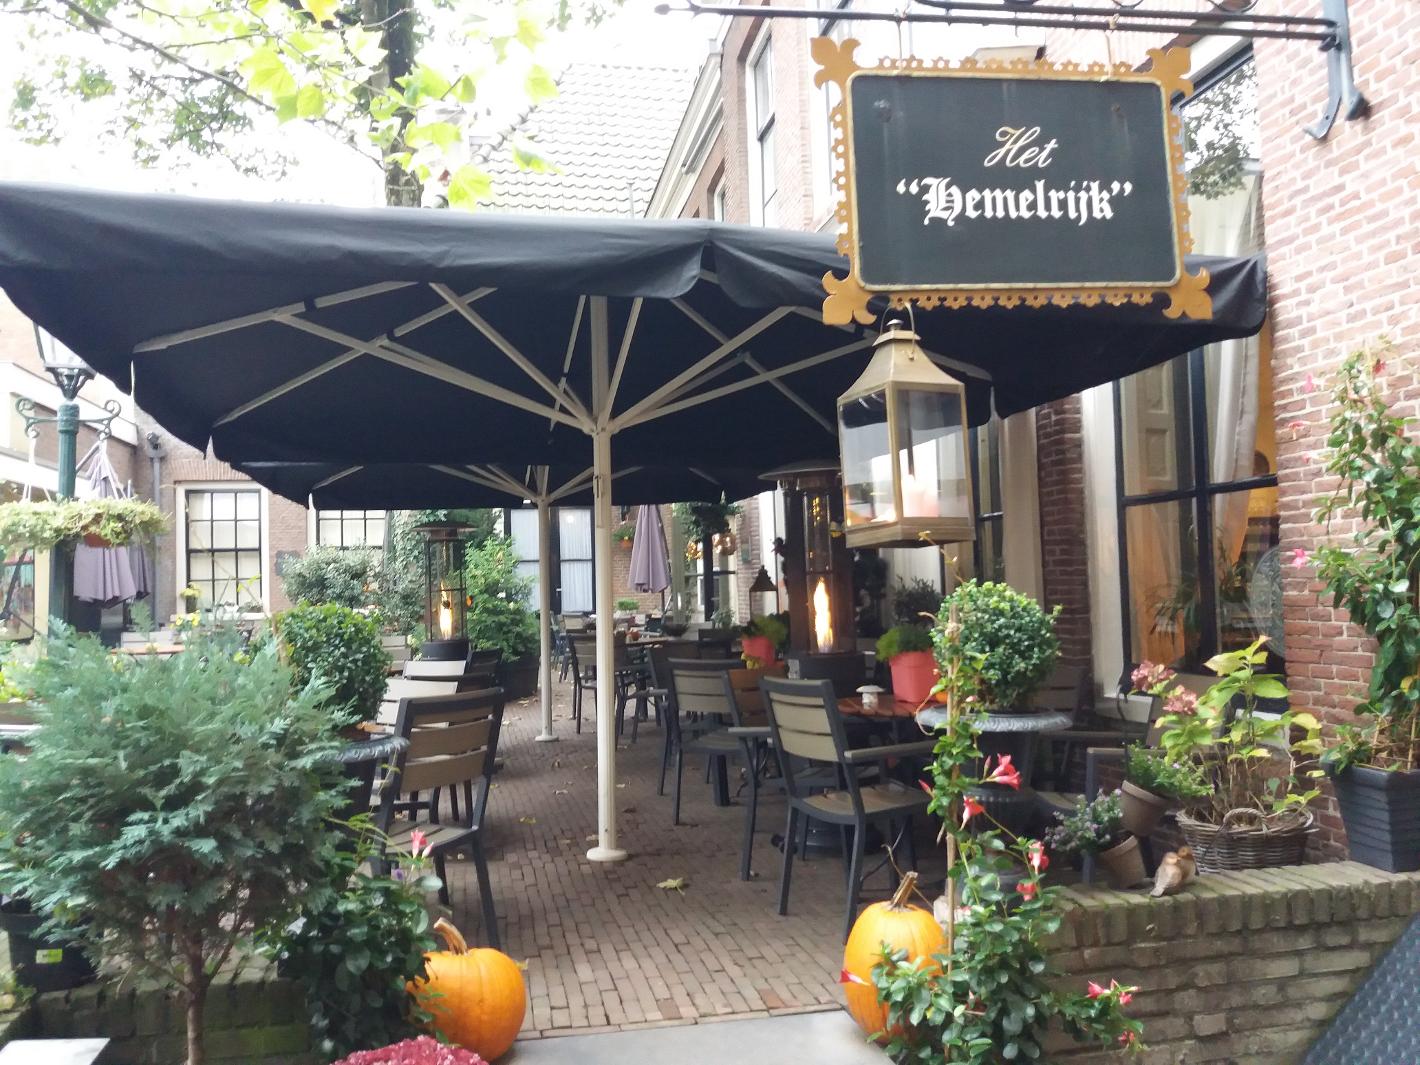 Foto Koffiehuis het Hemelrijk in Arnhem, Essen & Trinken, Trinke kaffee, tee, Genieße ein köstliches mittagessen - #4